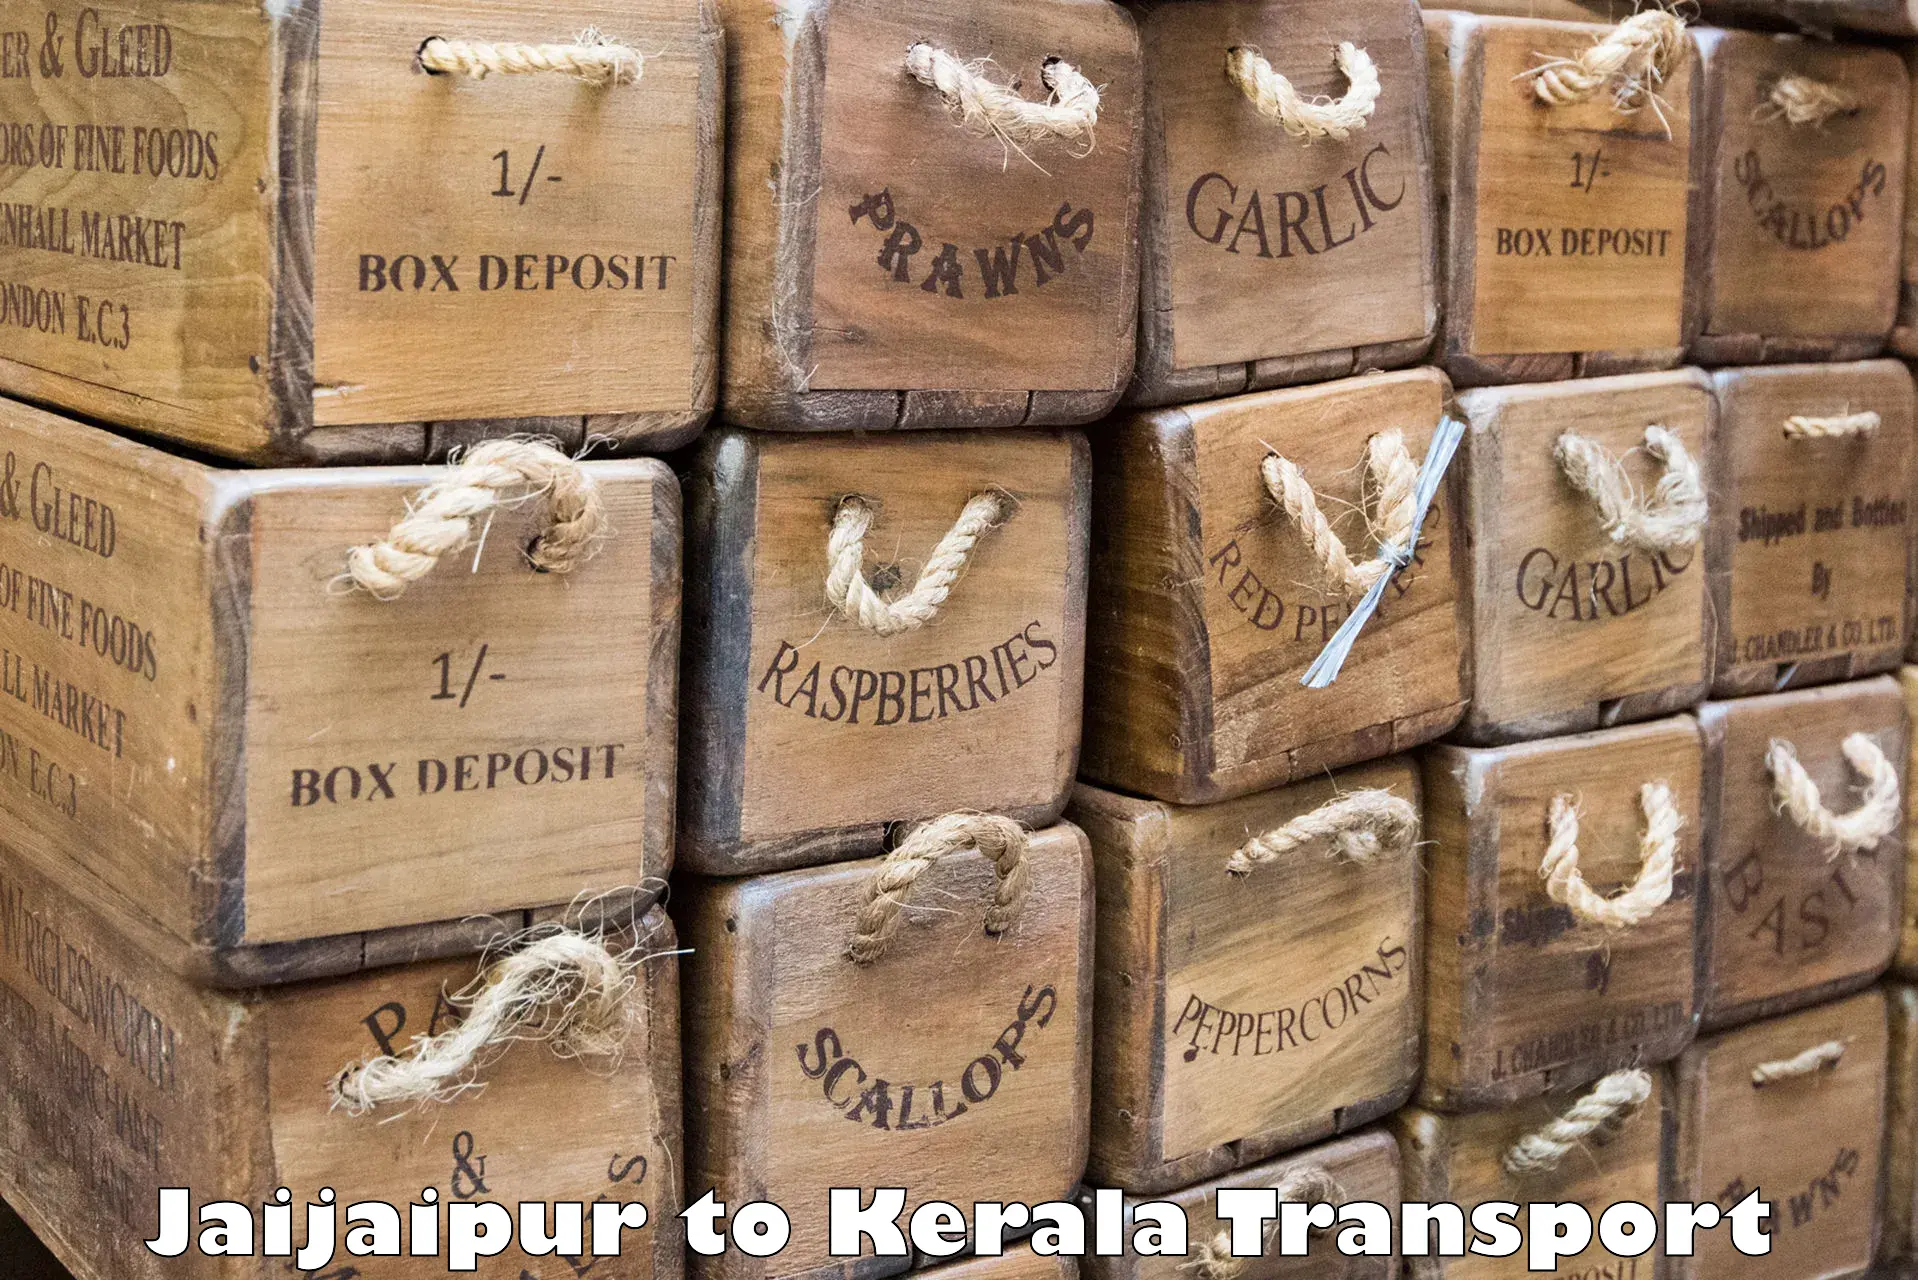 Nearby transport service Jaijaipur to Kerala